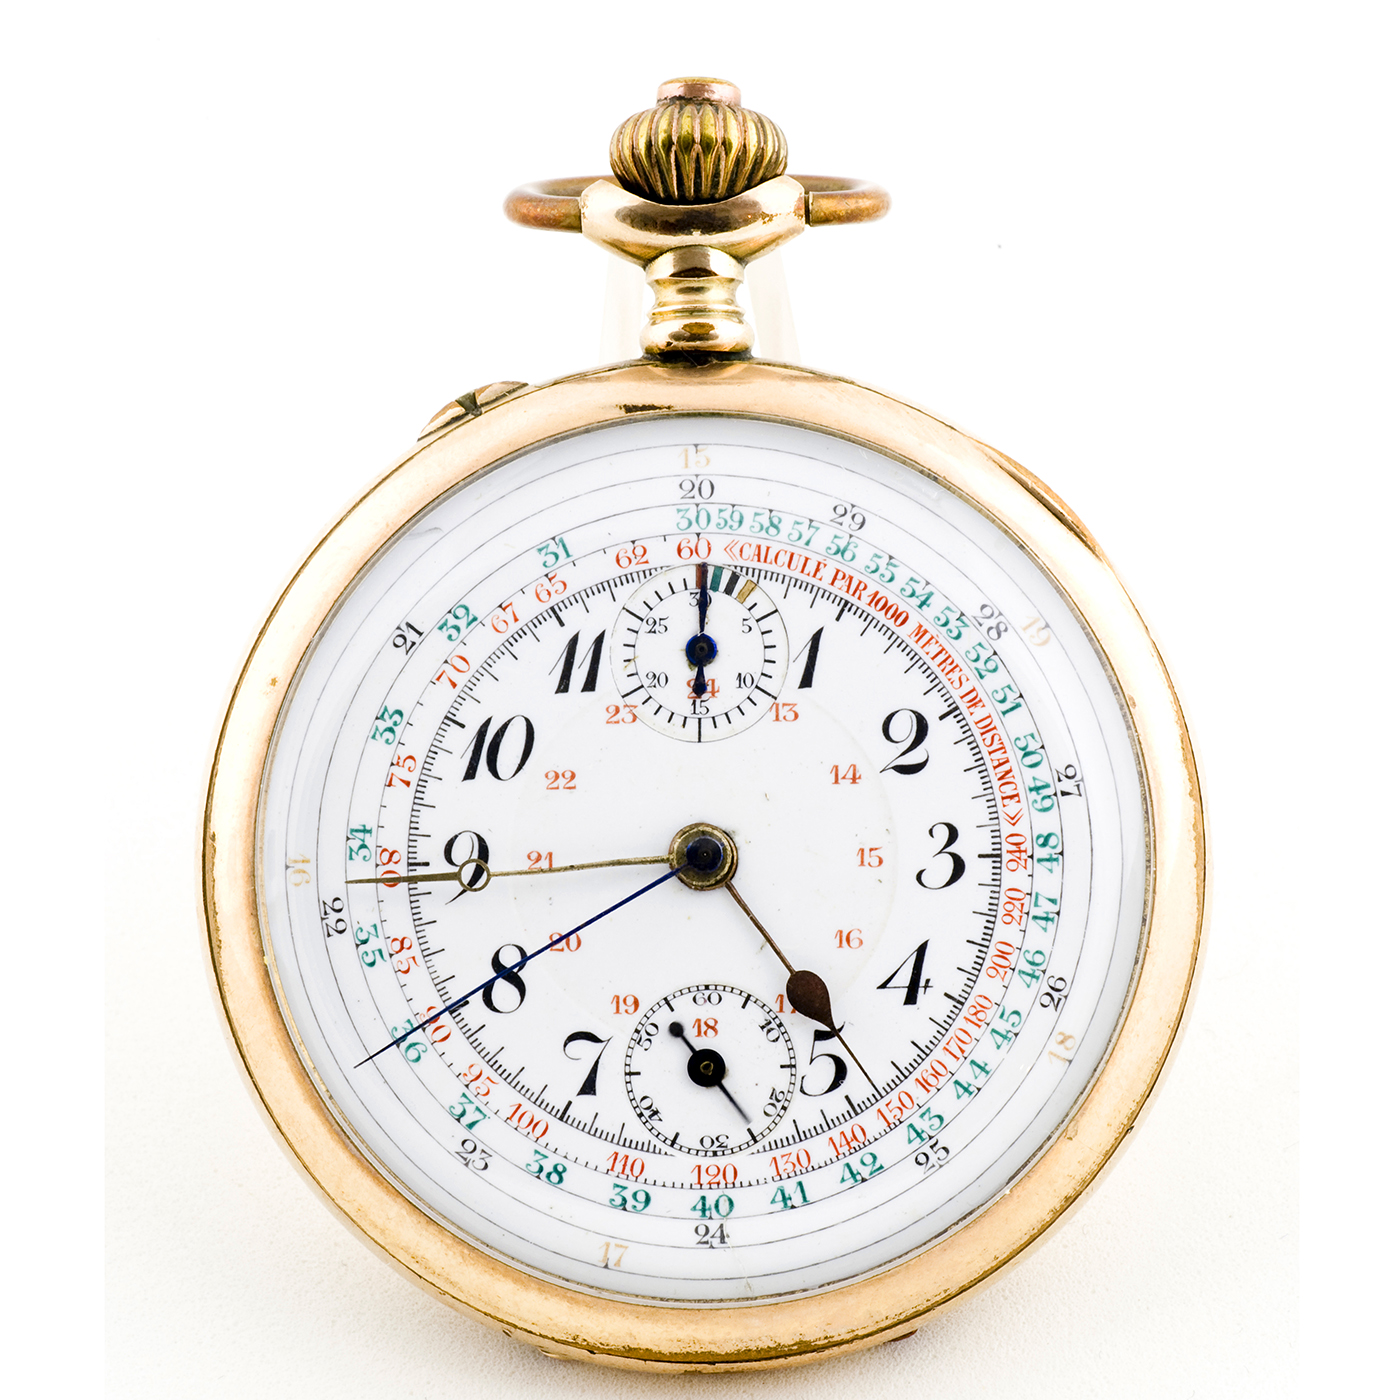 MGBM-GENEVE. Reloj Cronógrafo monopulsante de bolsillo, Lepine y remontoir. Ca. 1920